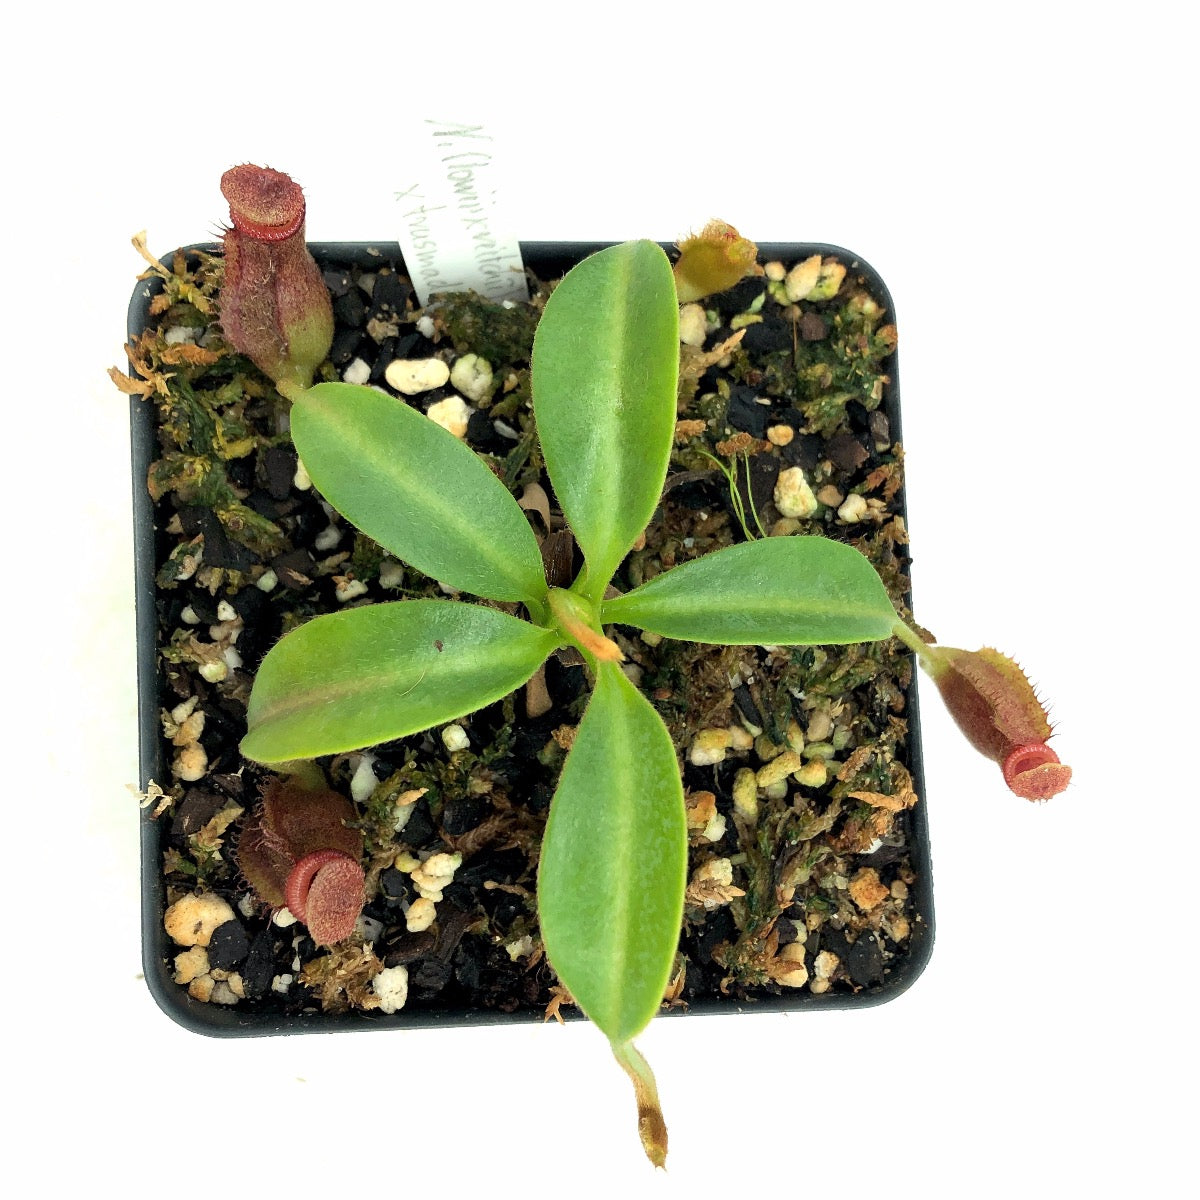 Nepenthes ([lowii x veitchii yellow] x boschiana) x trusmadiensis